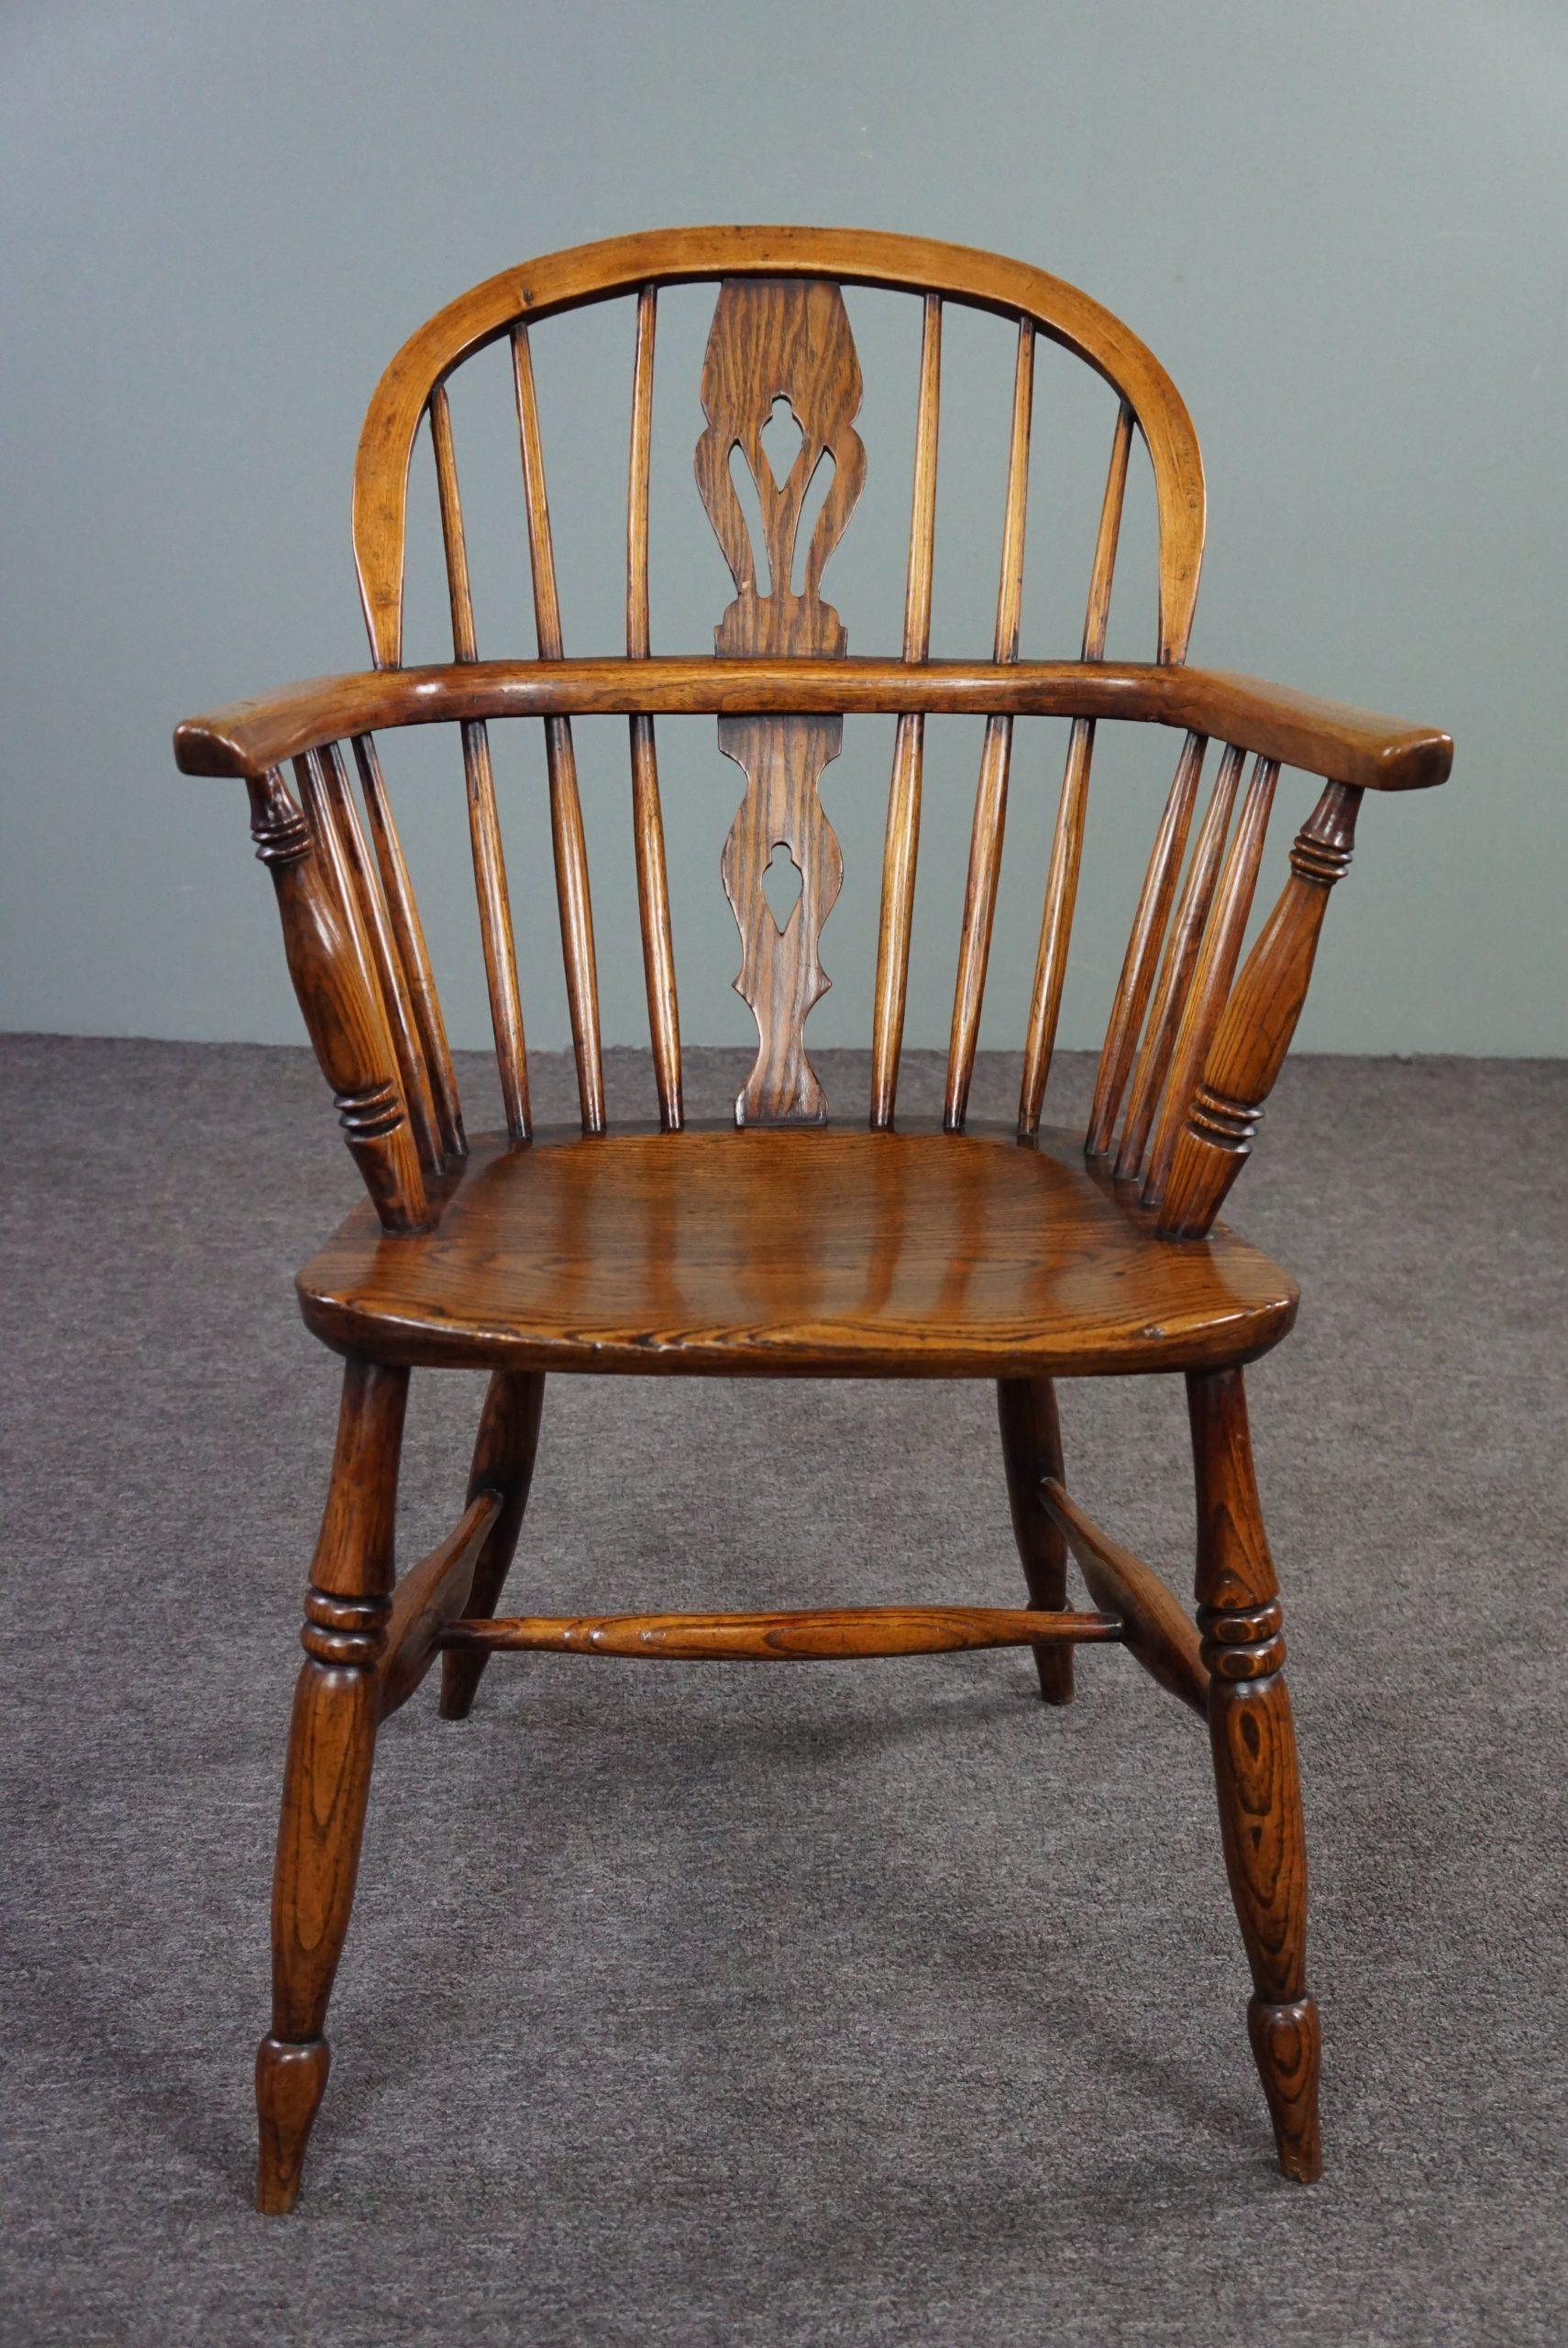 Angeboten wird dieser schöne antike Sessel aus Massivholz mit einem sehr schönen charakteristischen Aussehen.

Dieser auffällige englische antike Windsor-Sessel mit Armlehnen hat einen wohlgeformten dicken Massivholzsitz. Der Stuhl hat charmante